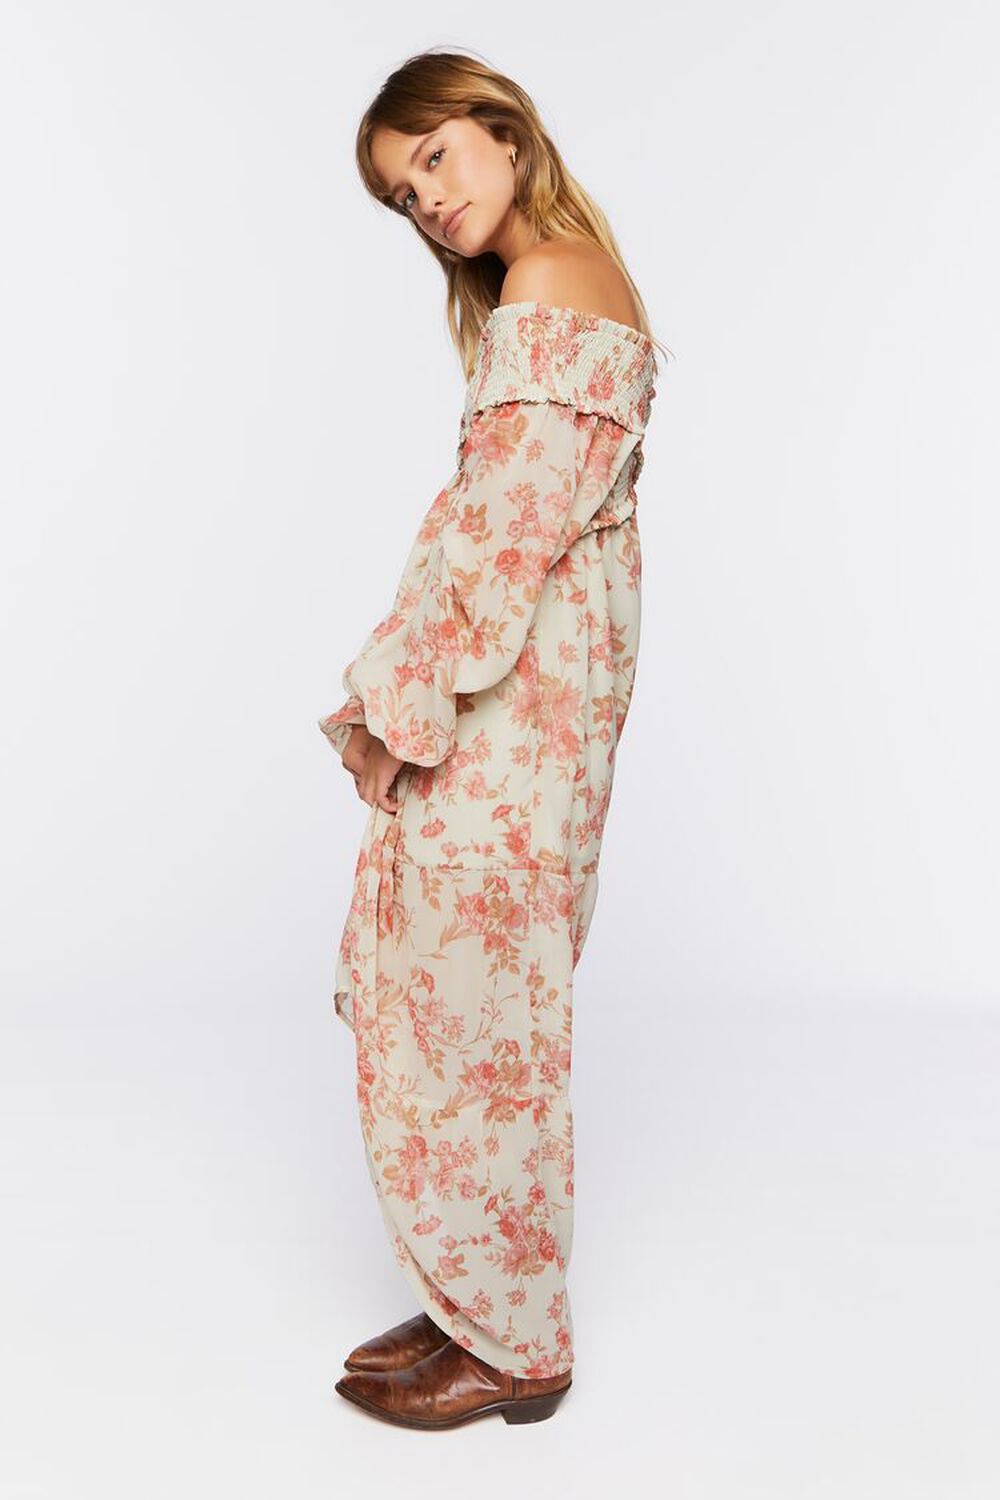 BEIGE/MULTI Floral Off-the-Shoulder Maxi Dress, image 2